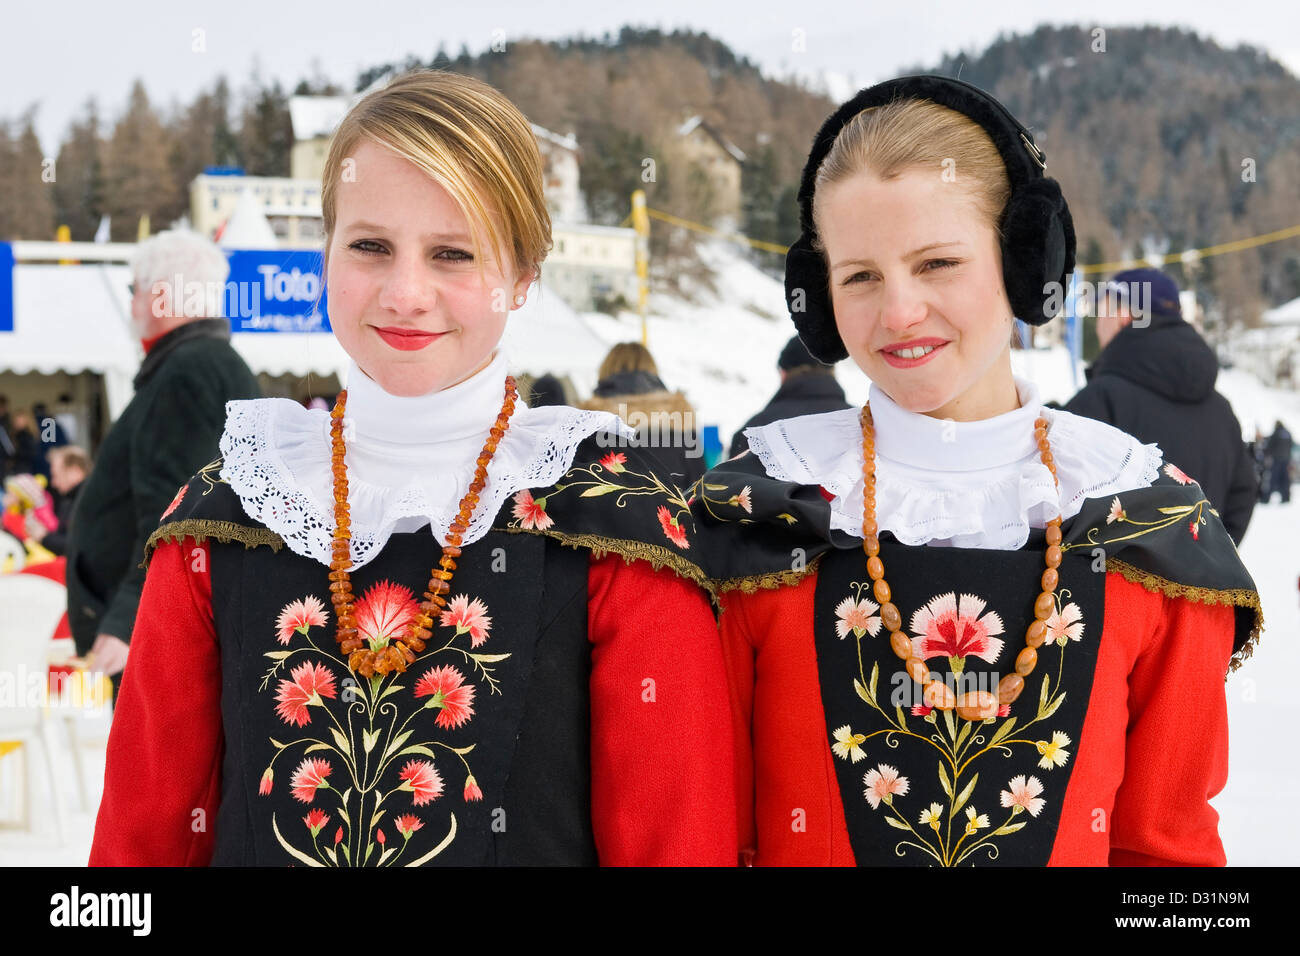 Schweiz, St. Moritz, traditionelle historische Kleidung Stockfotografie -  Alamy